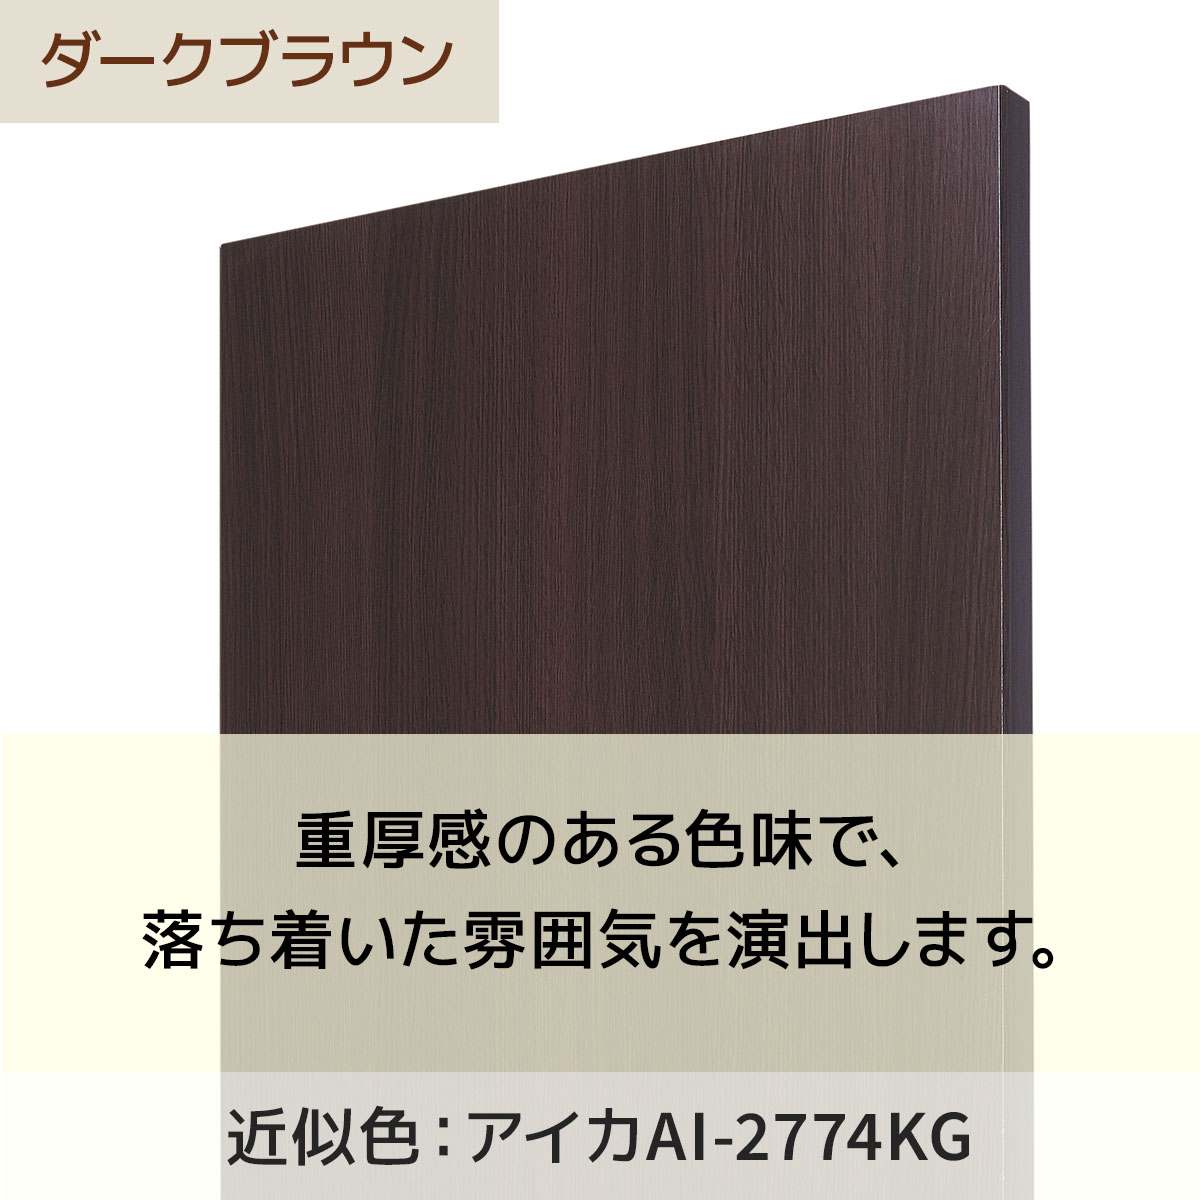 メラミン木棚セット W90xD40cm〔ストエキオリジナル〕 エクリュ 【通販 